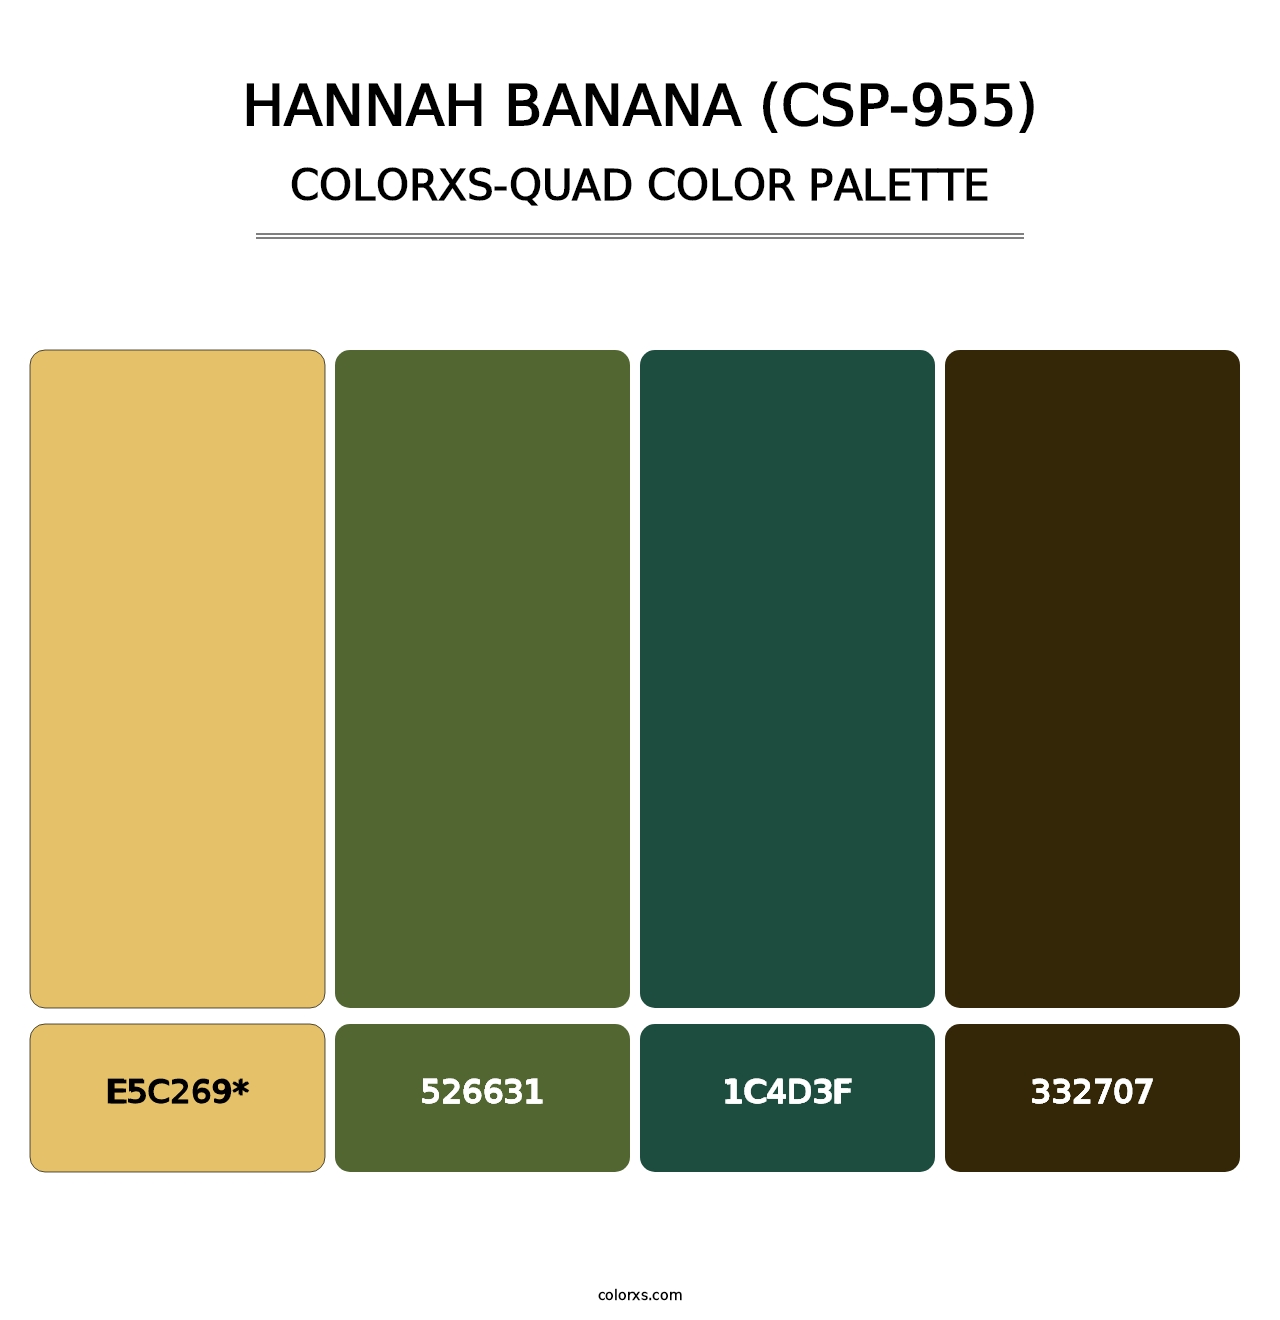 Hannah Banana (CSP-955) - Colorxs Quad Palette